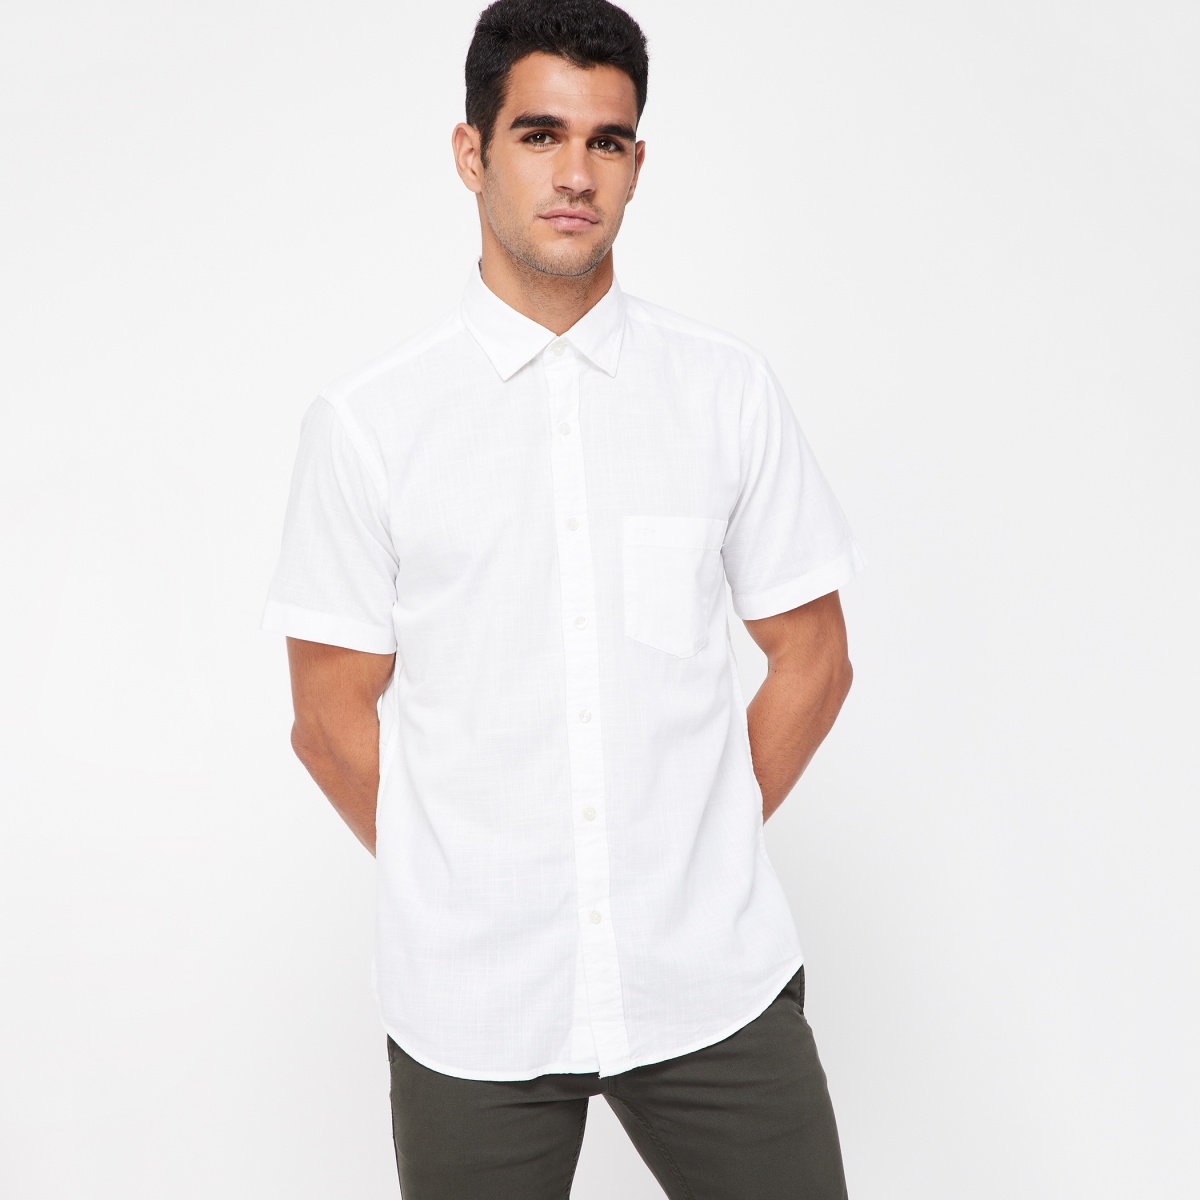 COLORPLUS Slim Fit Solid Half Sleeve Shirt